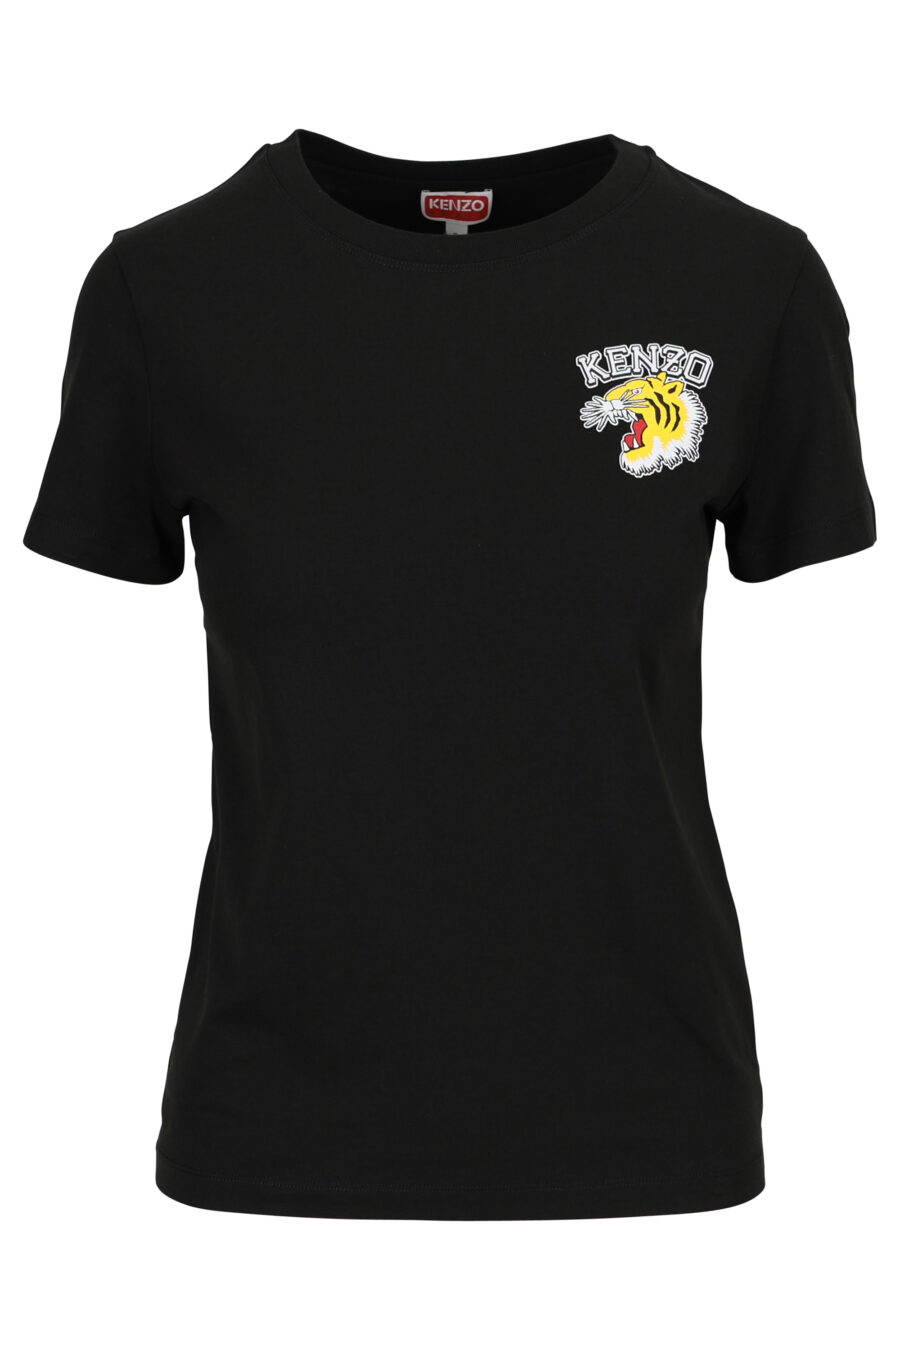 T-shirt schwarz mit Minilogue "Tiger" - 3612230552319